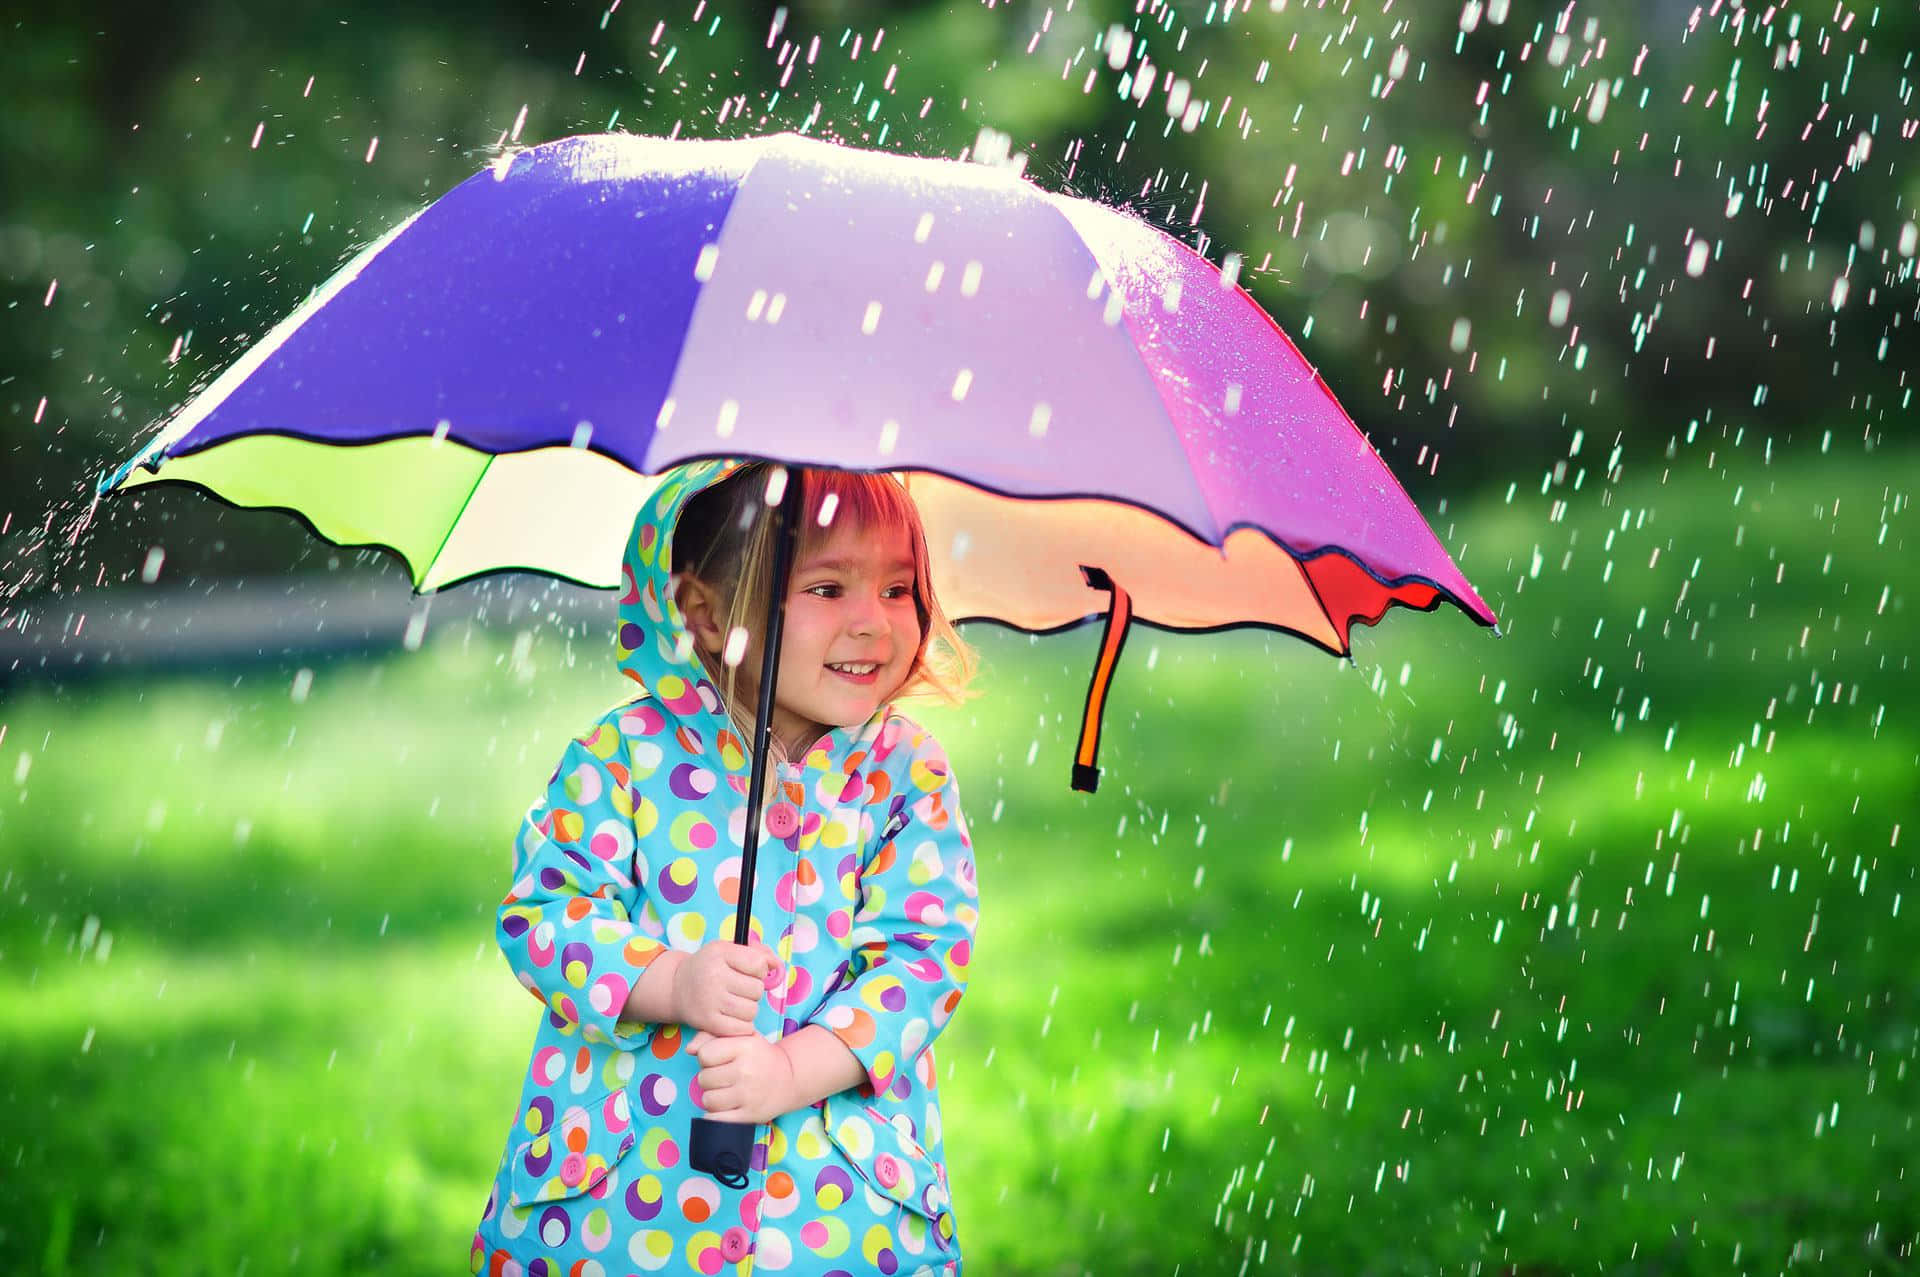 Pequenamenina Com Guarda-chuva Em Uma Imagem De Dia Chuvoso.